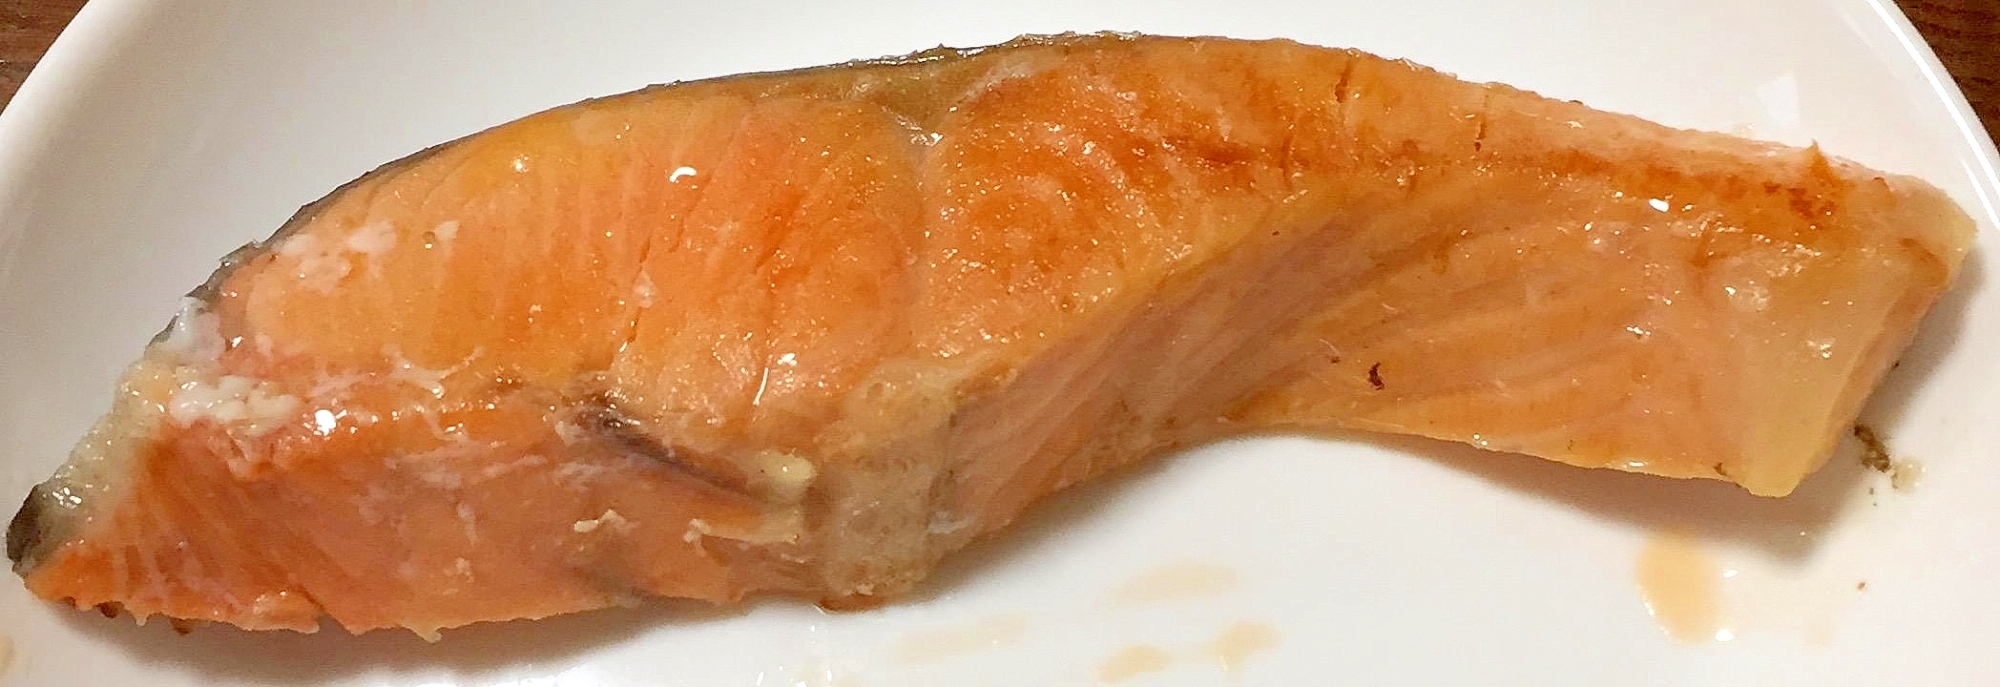 オリーブオイルdeしっとりふっくら美味しい焼き鮭